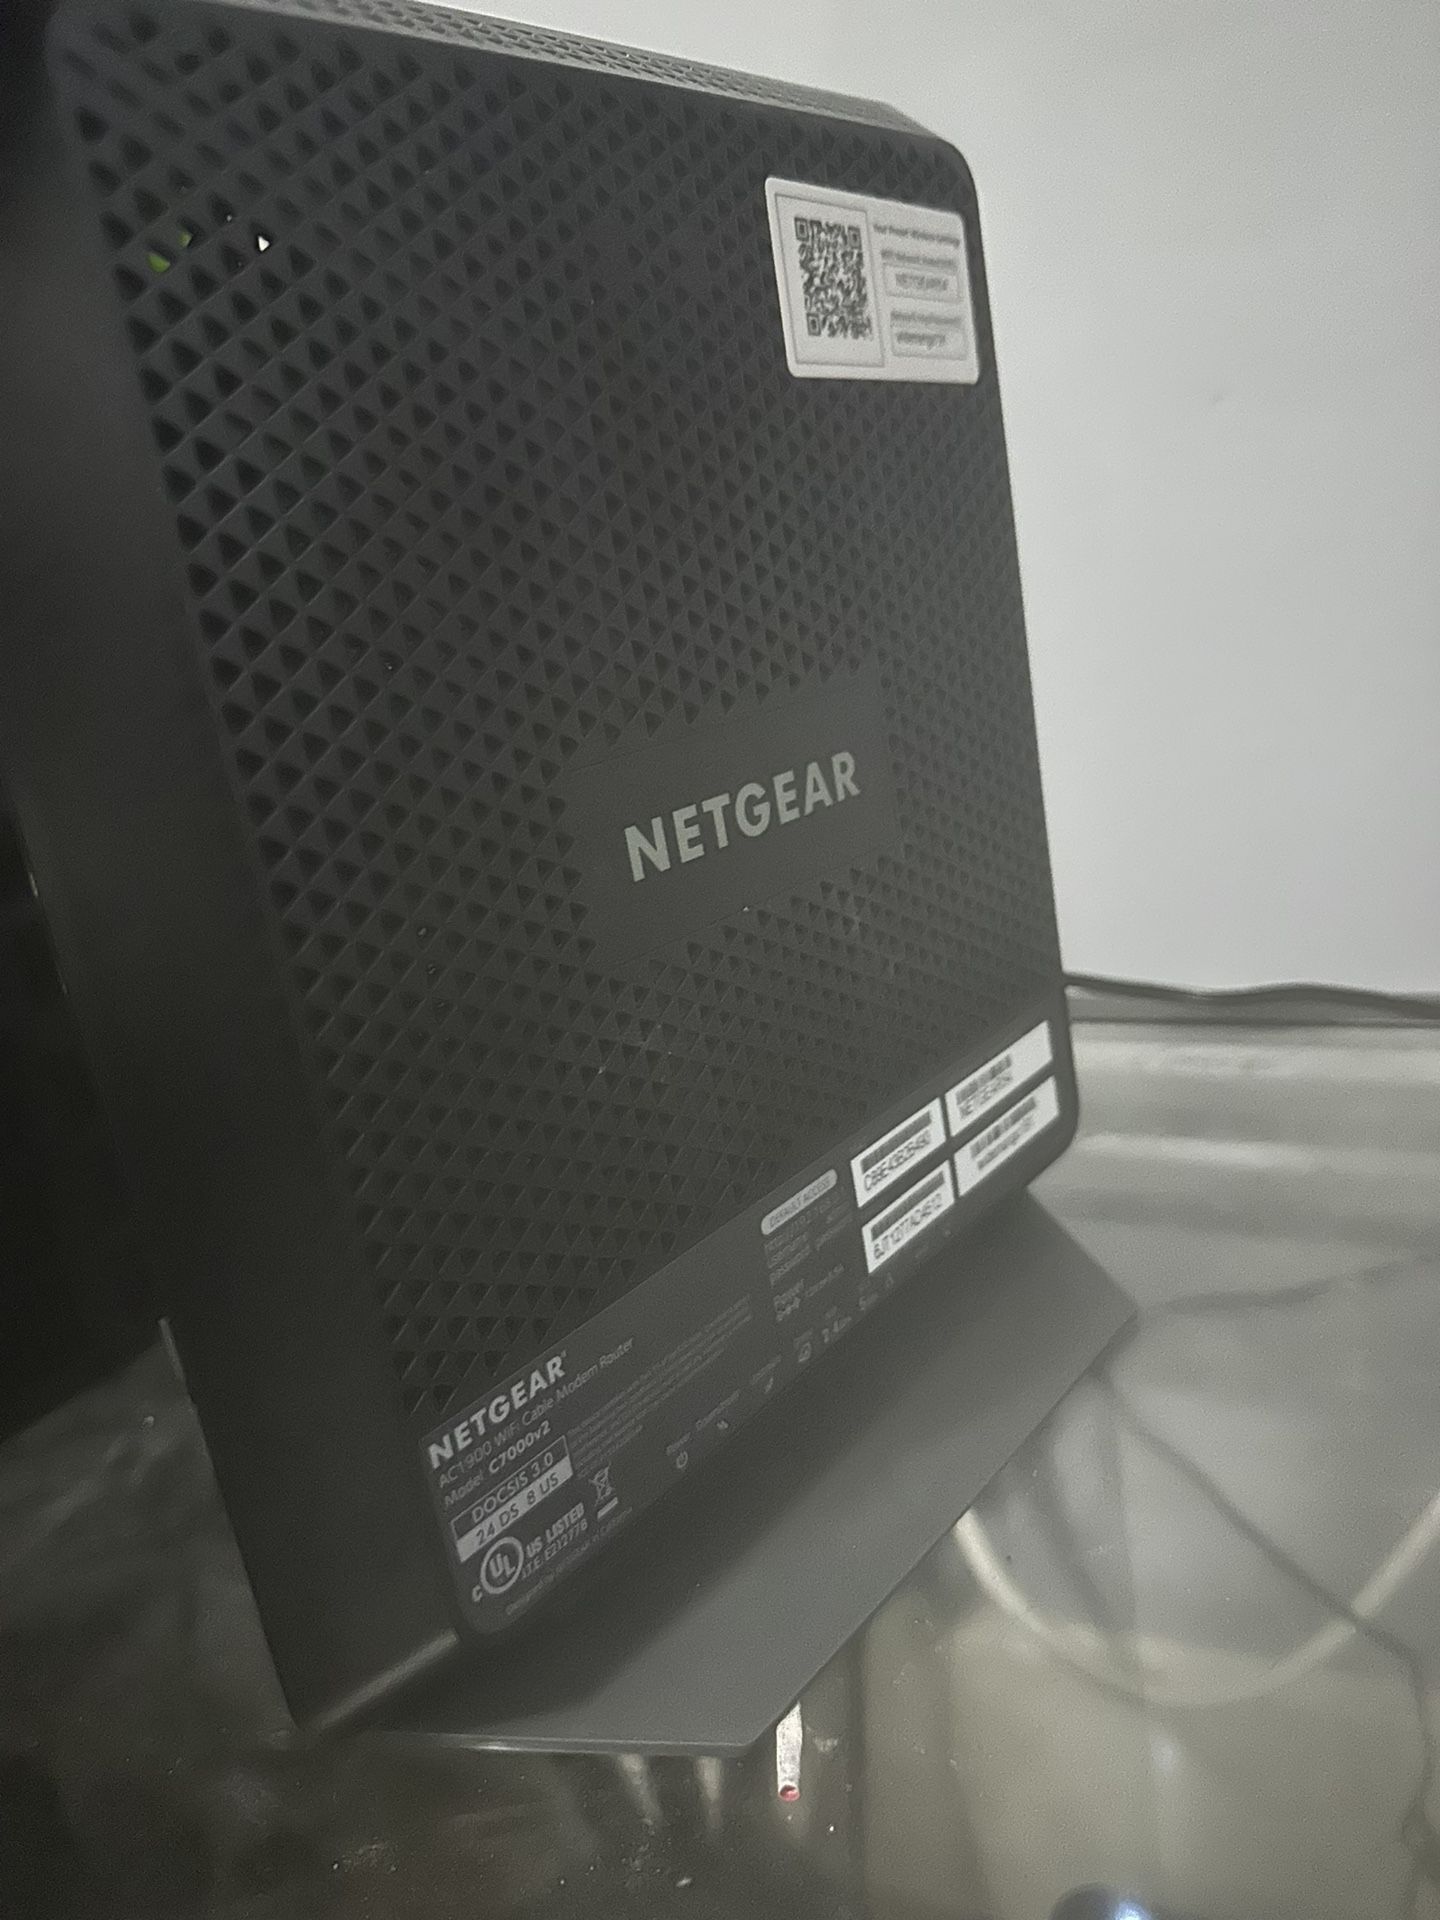 Netgear AC 1900 Cable Modem Router 